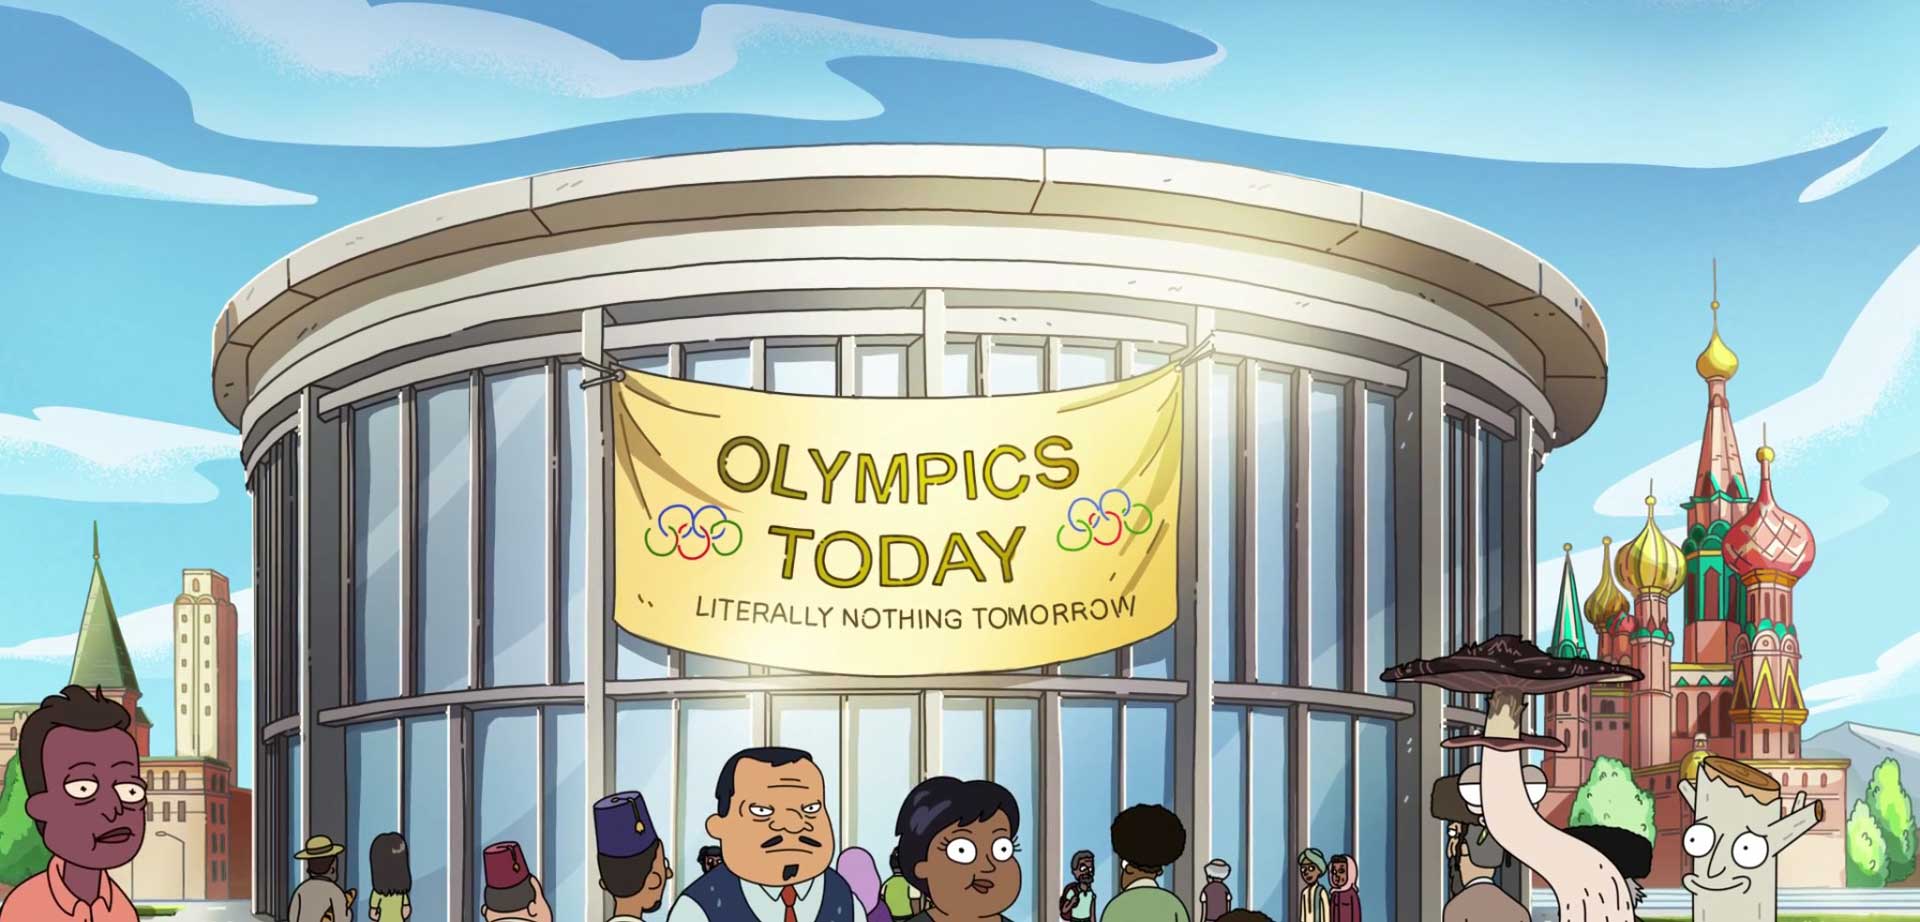 پارچه آویزان شده از دیوار ورزشگاه محل برگزاری مسابقات المپیک در سریال کمدی بزرگ سالانه Solar Opposites